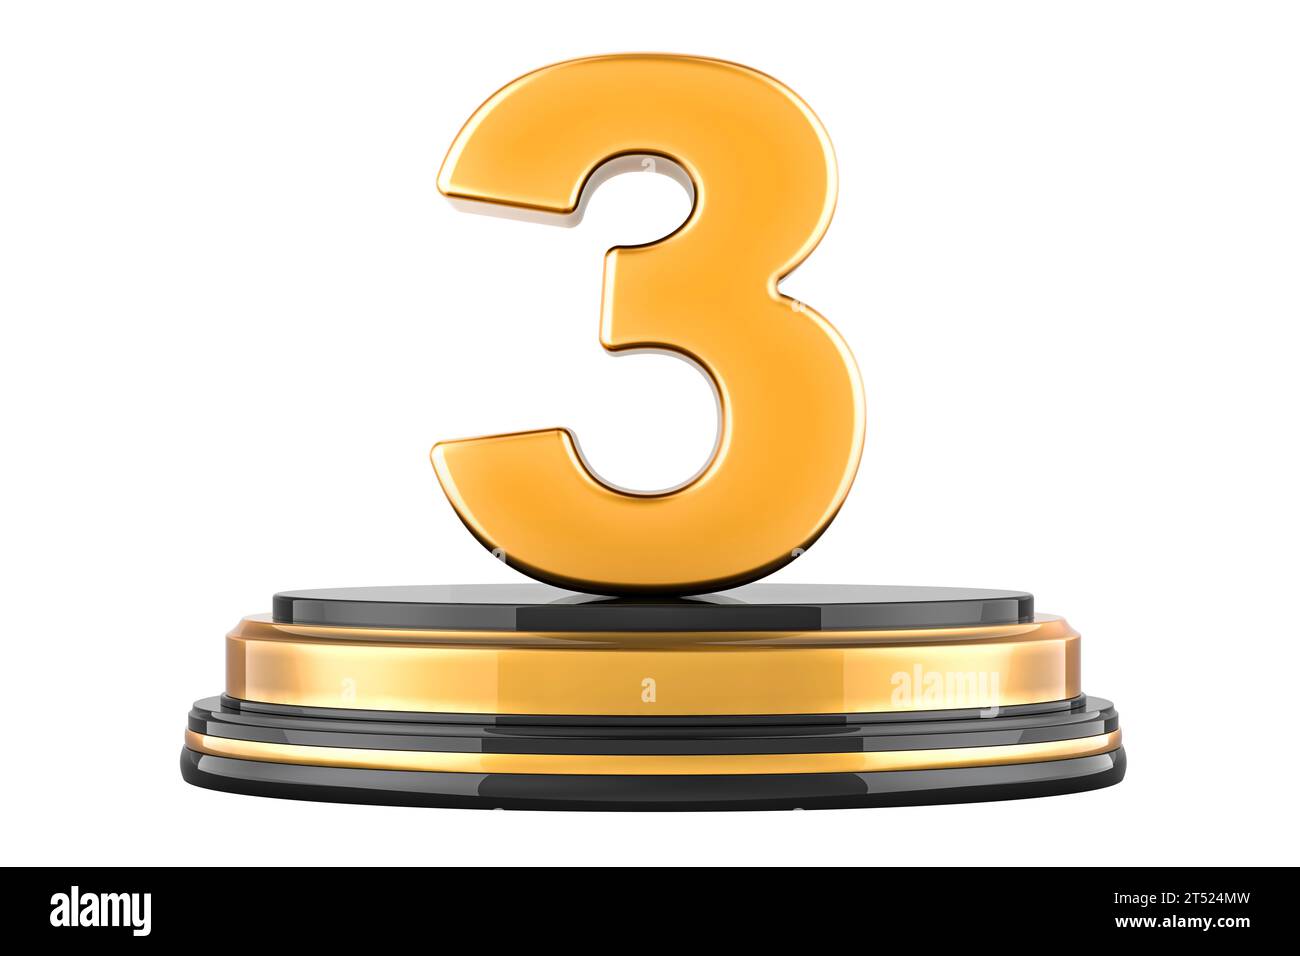 Golden 3 Three sul podio, concetto di premio. Rendering 3D isolato su sfondo bianco Foto Stock